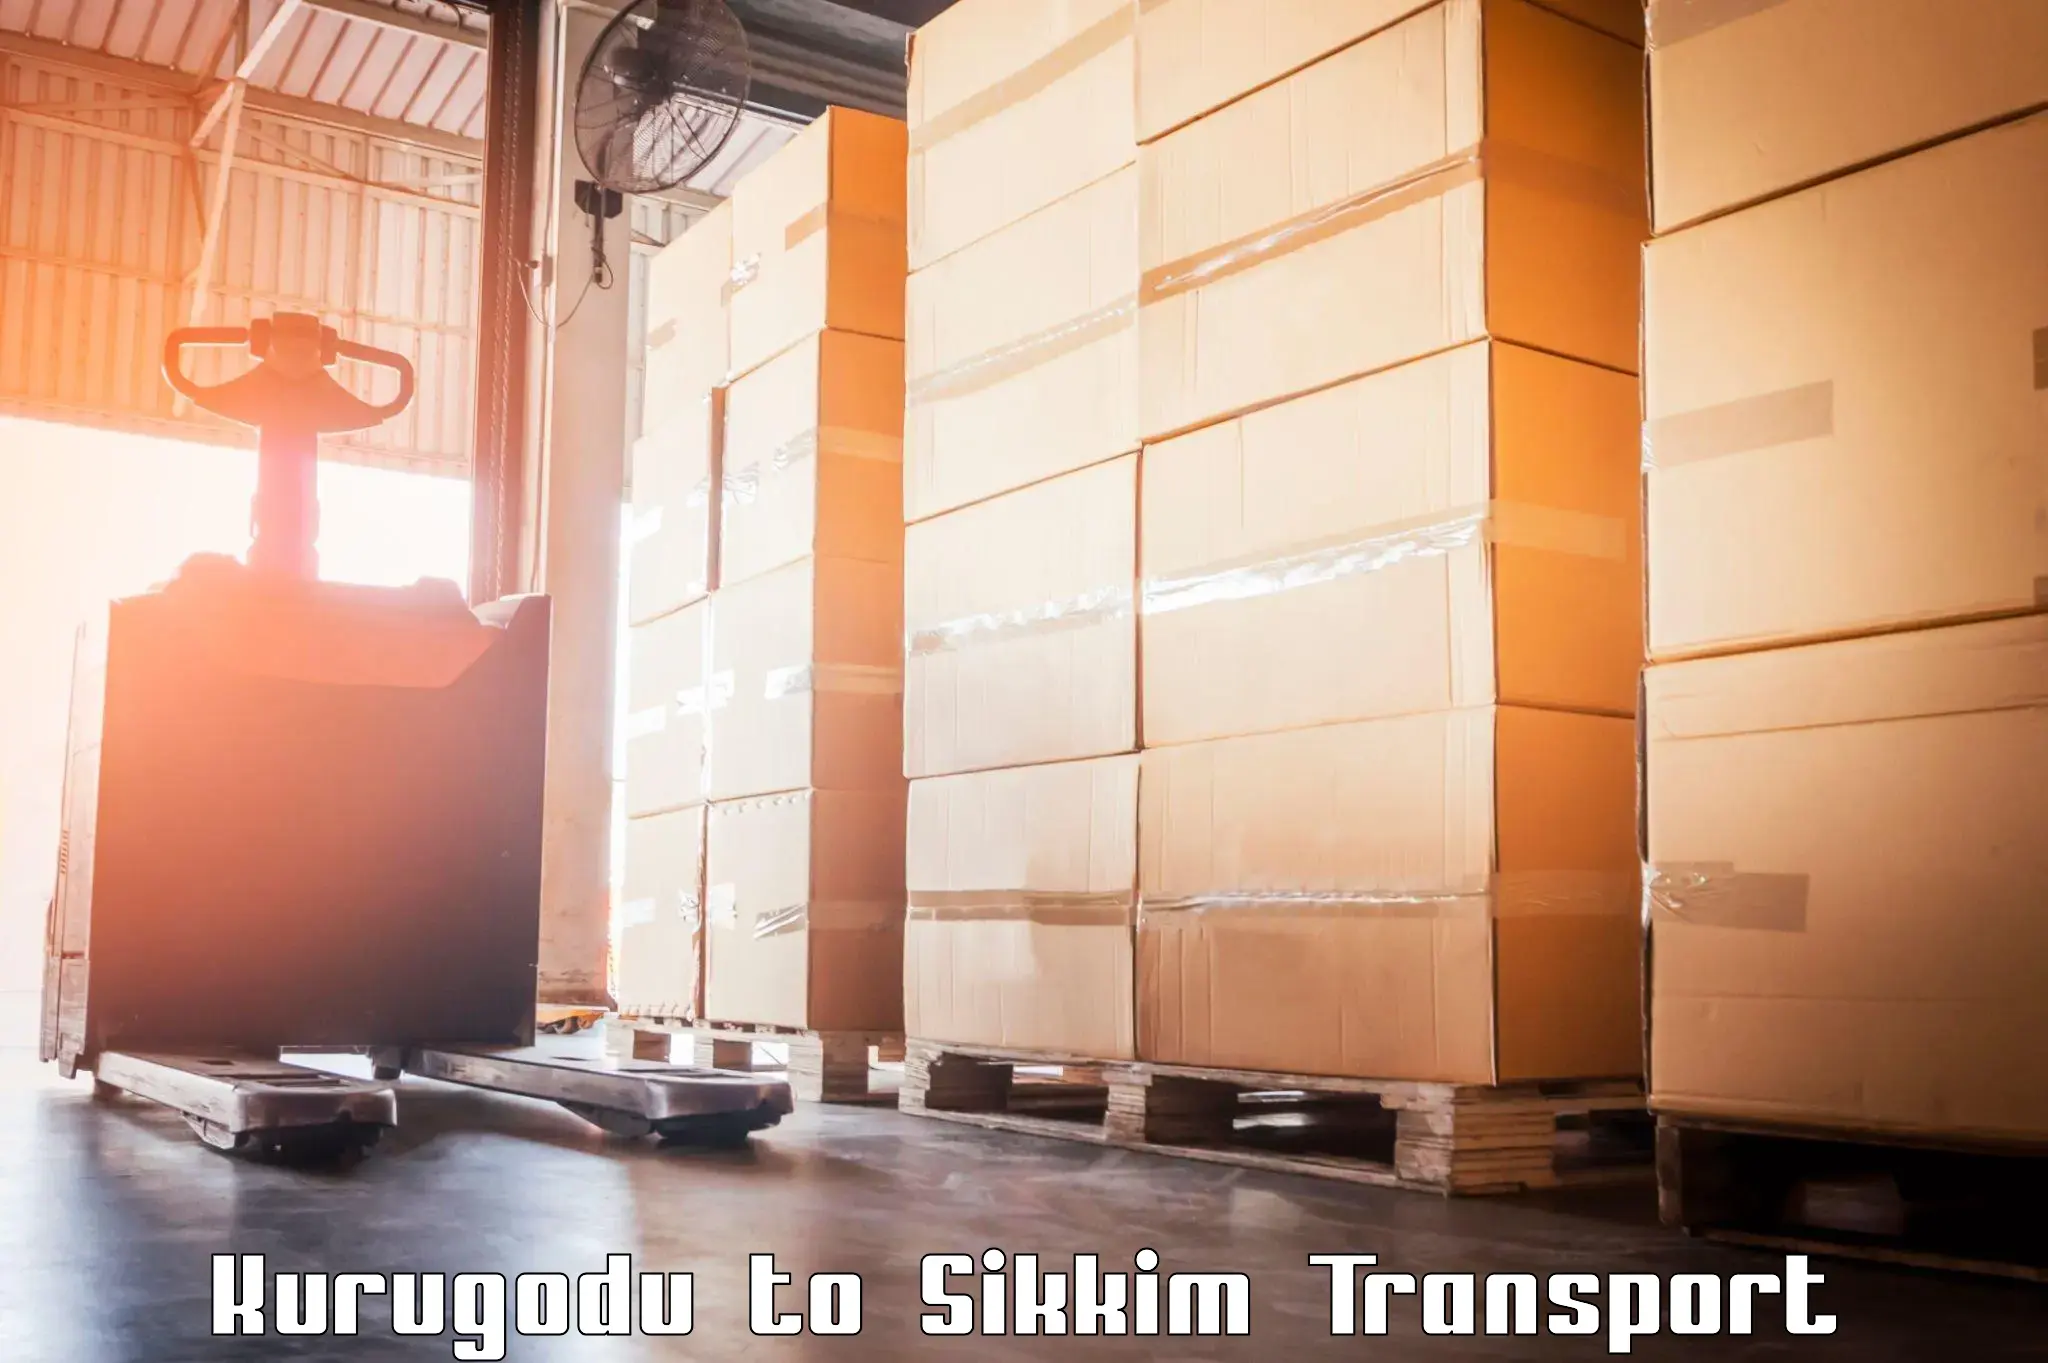 India truck logistics services Kurugodu to Geyzing